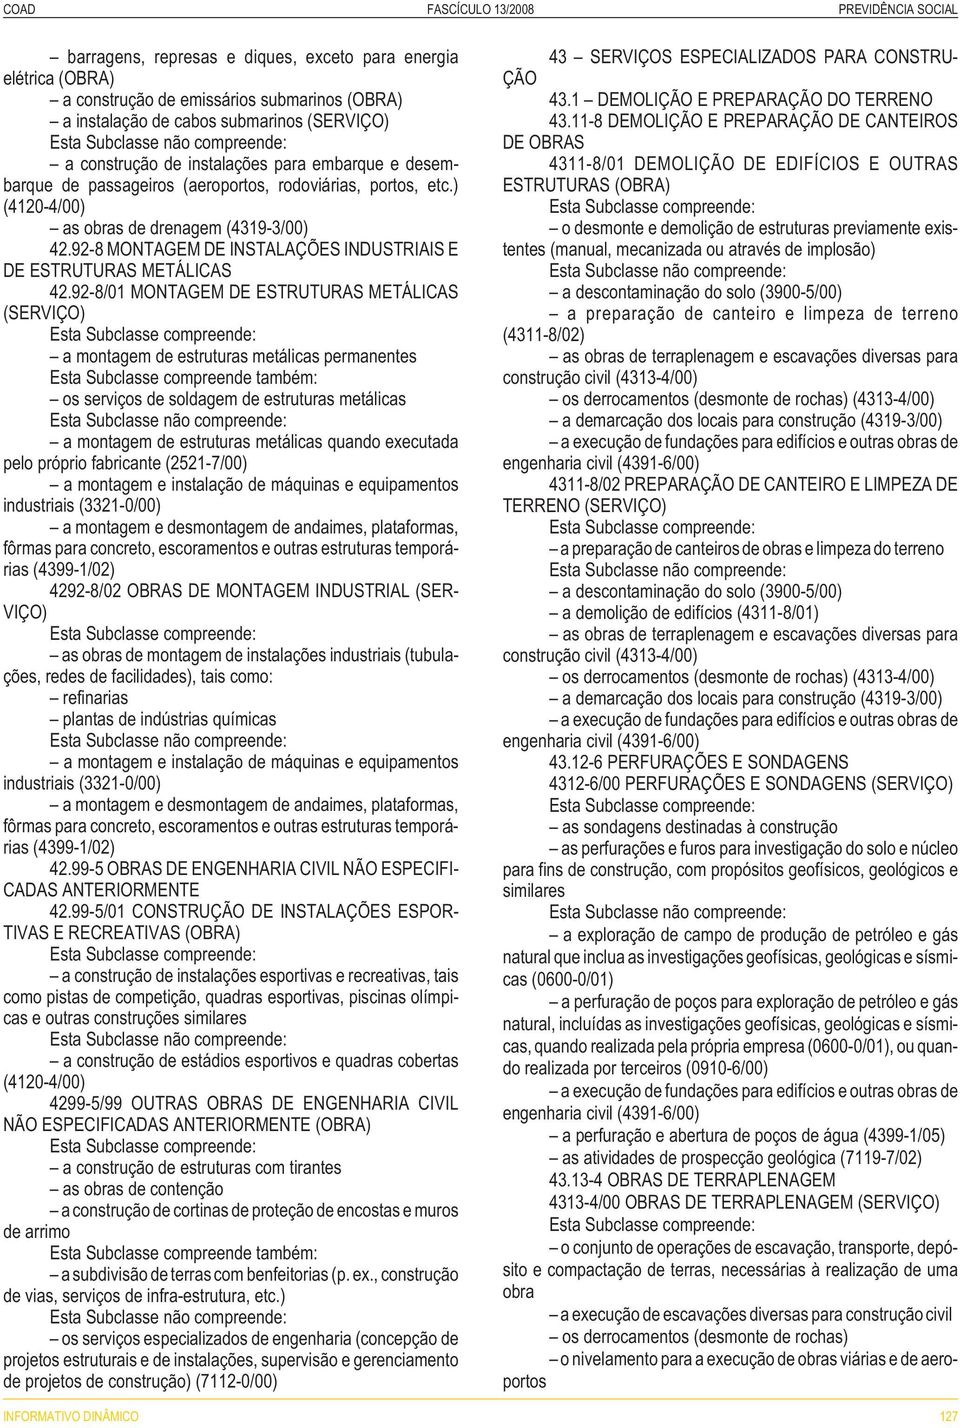 92-8 MONTAGEM DE INSTALAÇÕES INDUSTRIAIS E DE ESTRUTURAS METÁLICAS 42.